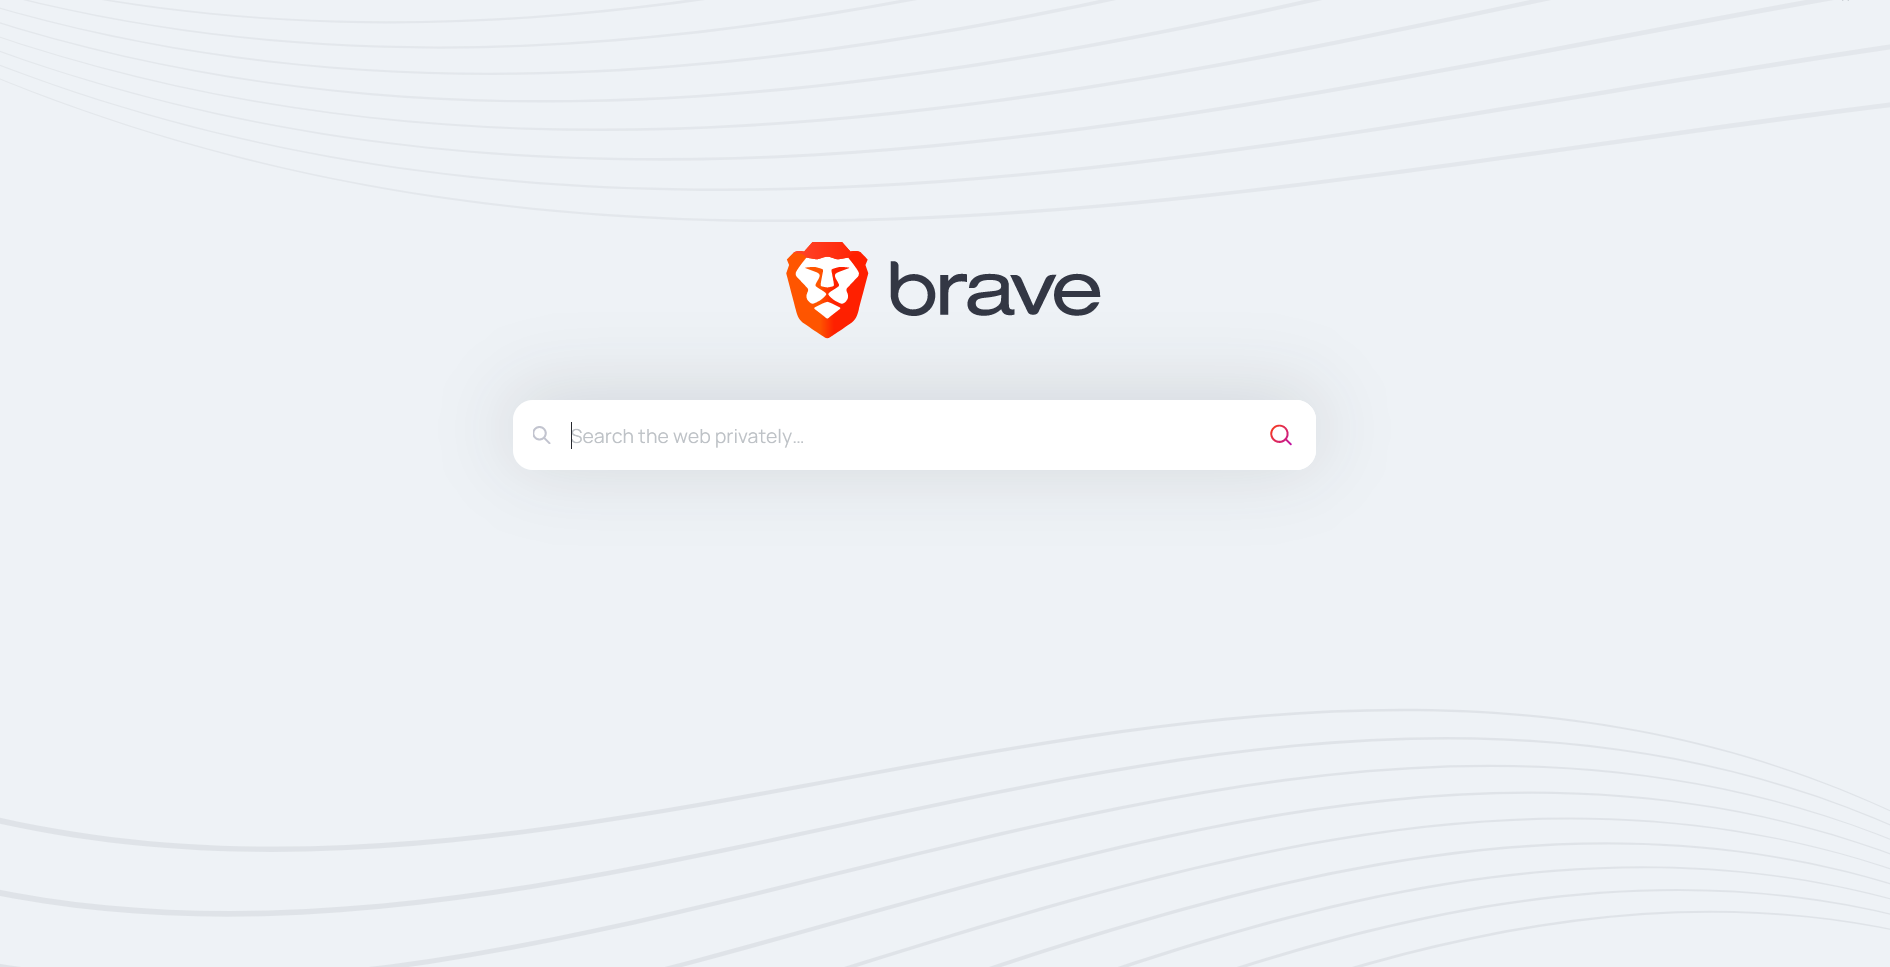 Поисковая система Brave начала работать и показывать рекламу